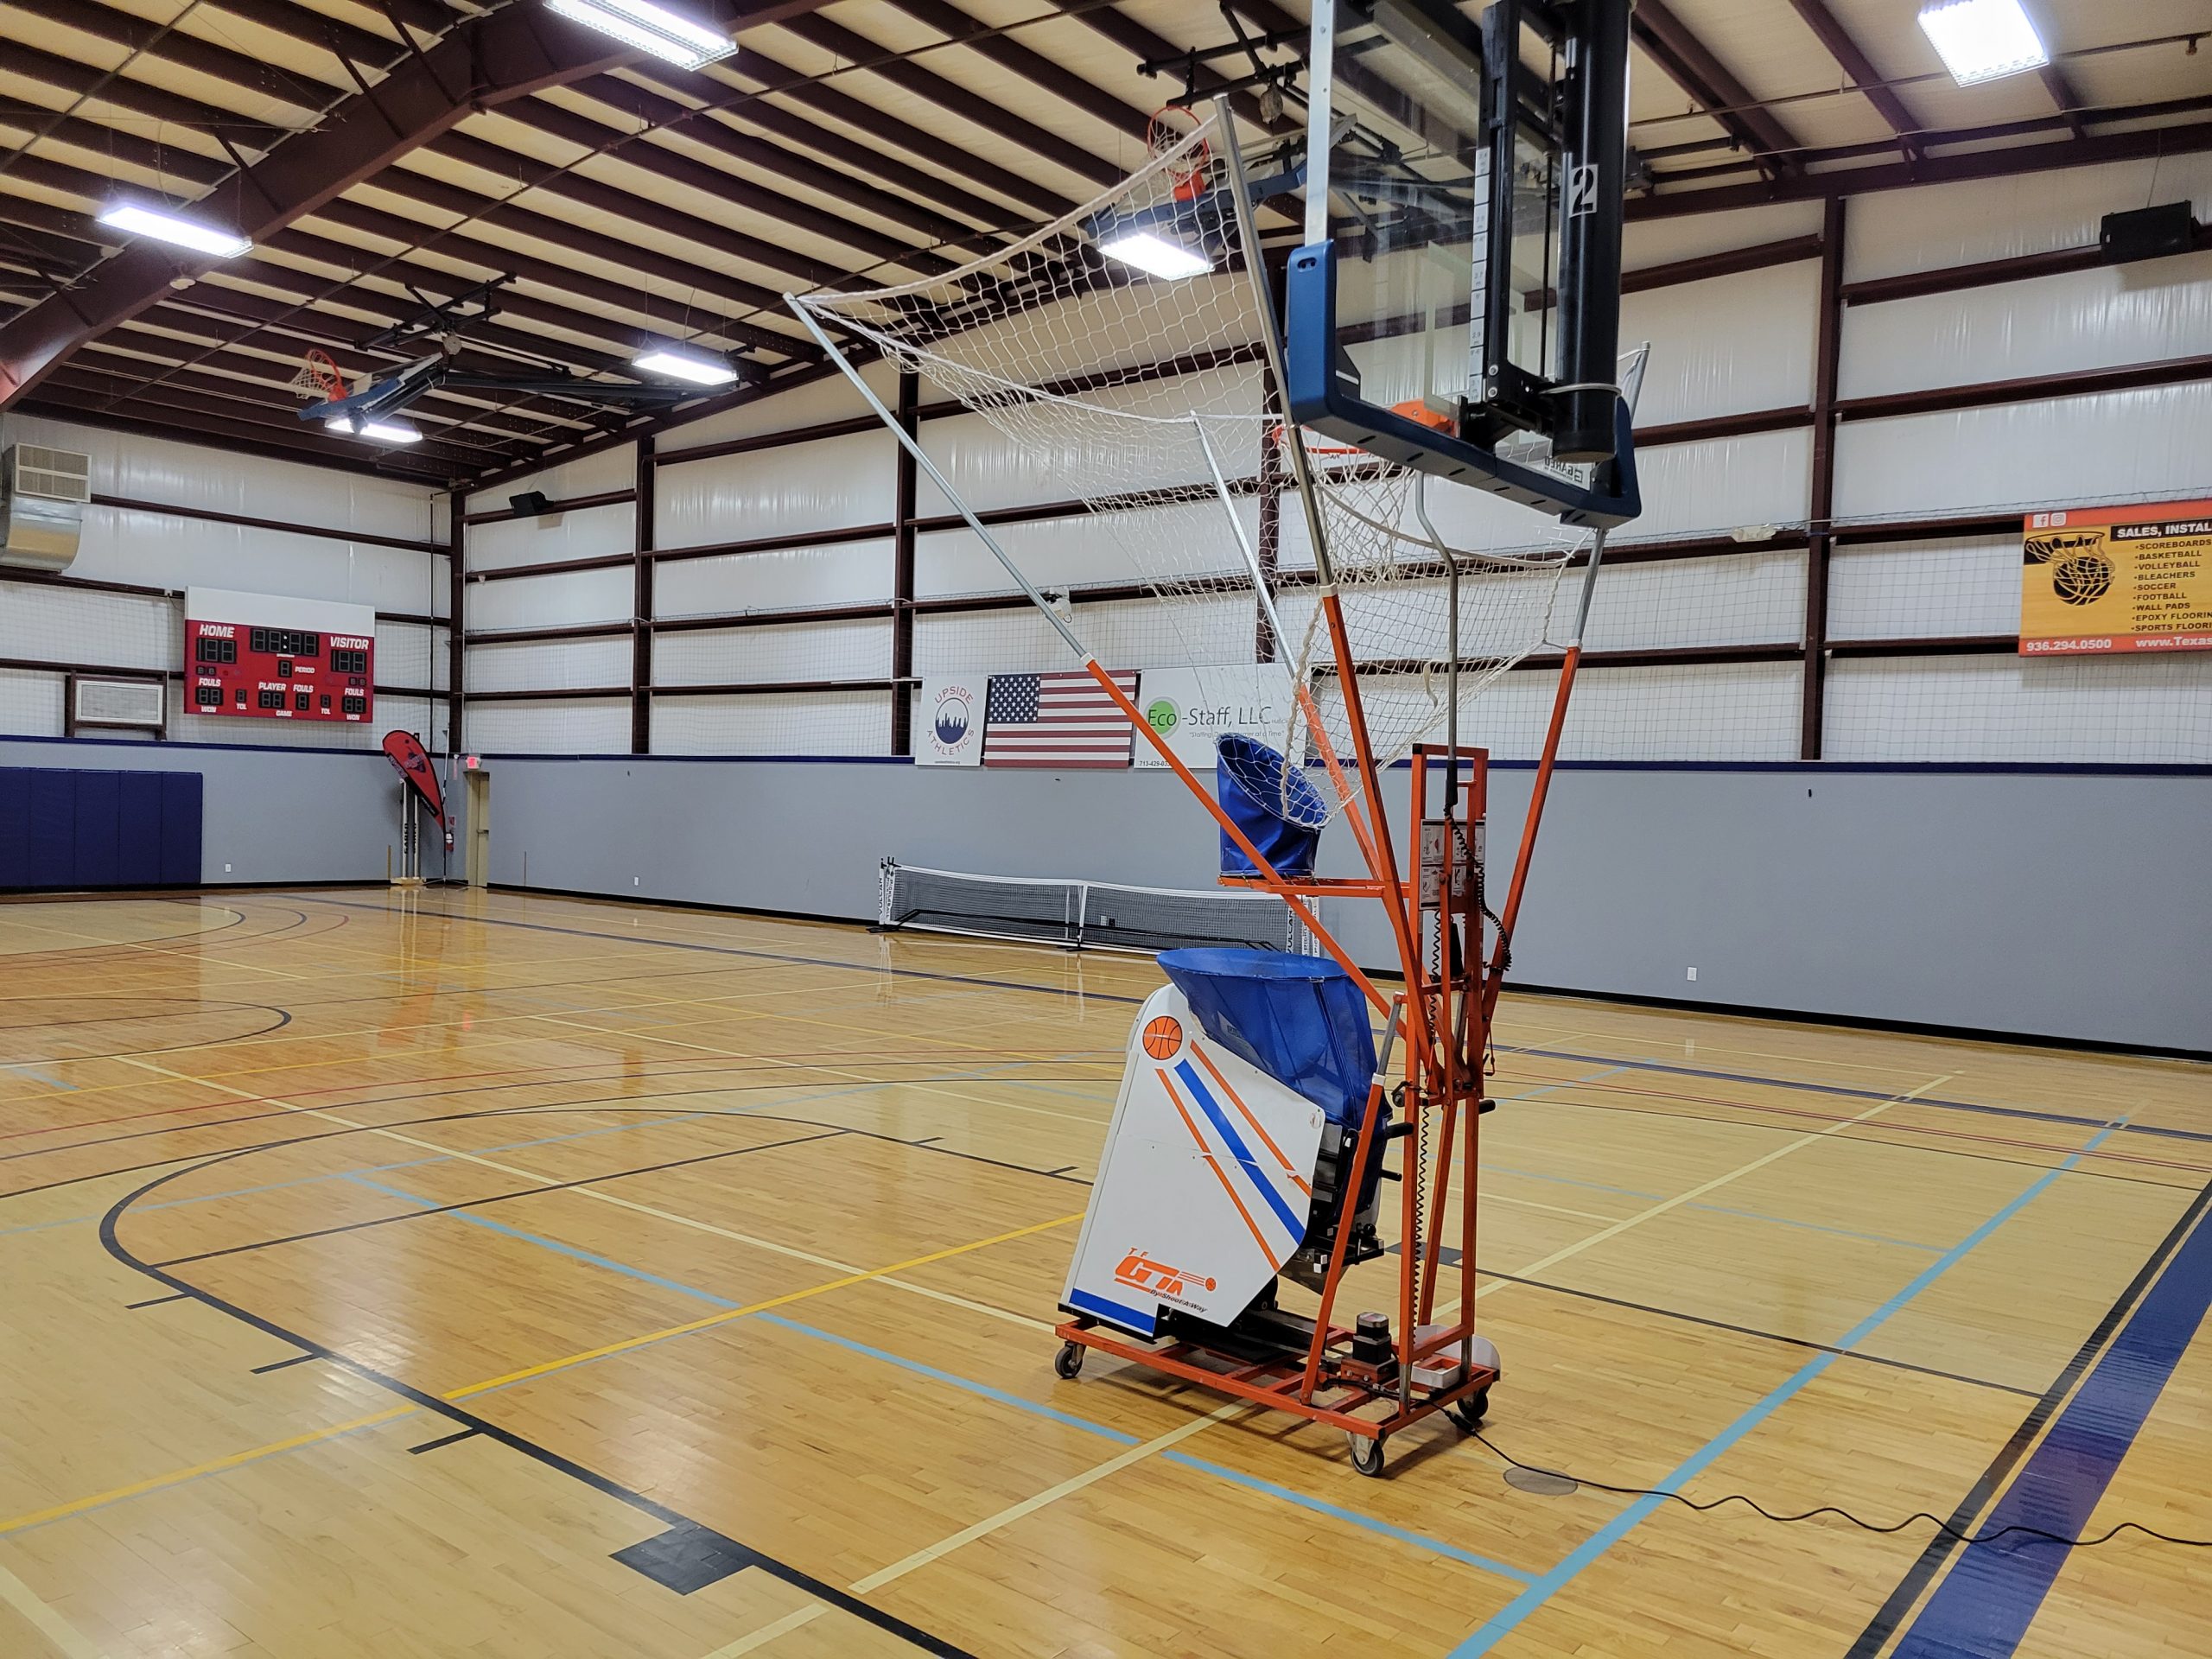 https://www.upsidesportsplex.com/wp-content/uploads/2022/03/shot-gun-basketball-scaled.jpg